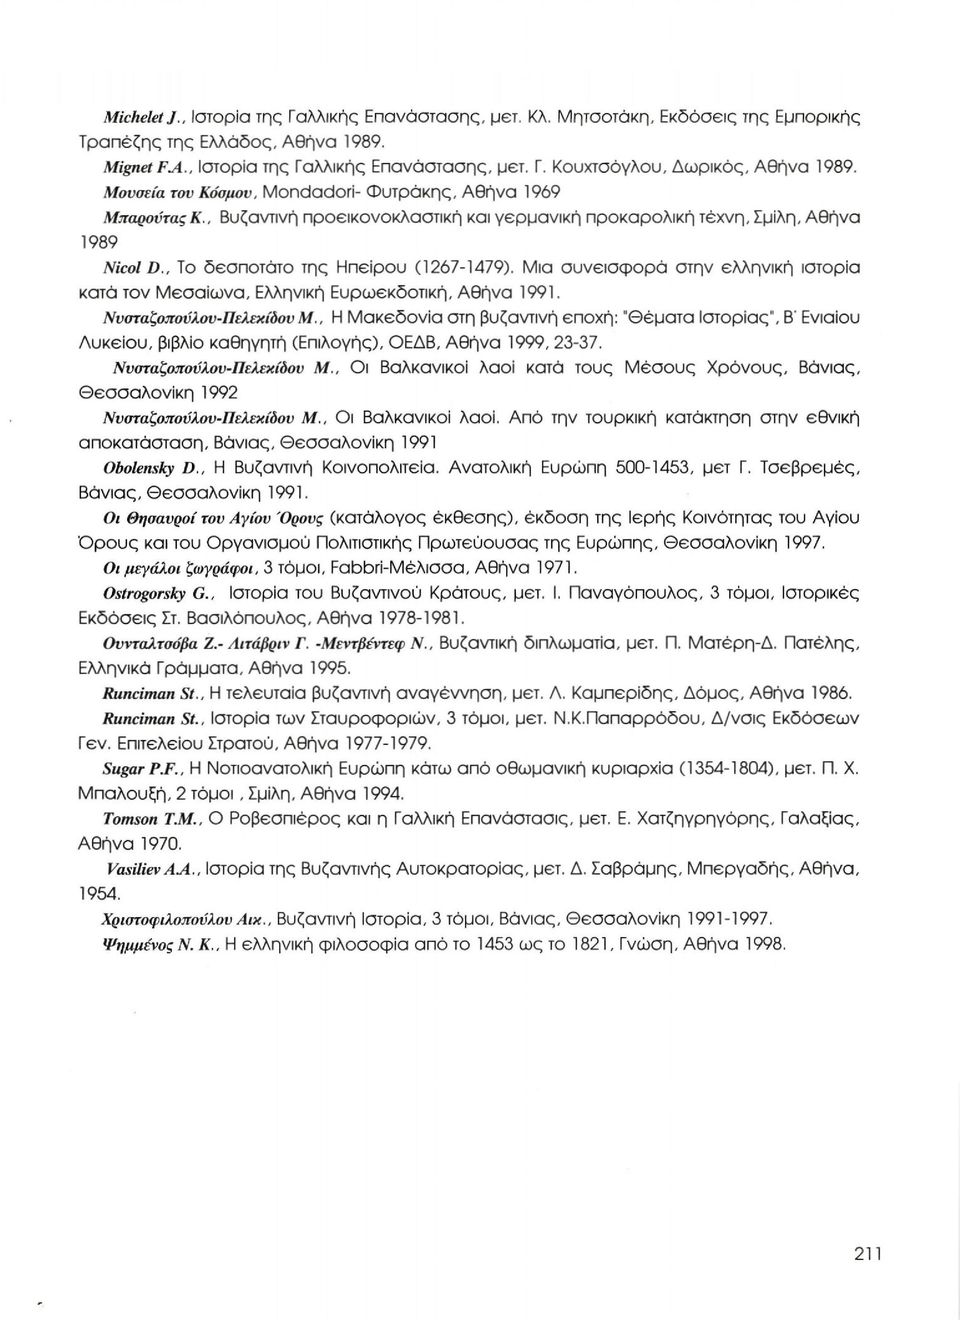 Μια συνεισφορά στην ελληνική ιστορία κατά τον Μεσαίωνα, Ελληνική Ευρωεκδοτική, Αθήνα 1991. Ννσταζοπούλου-Πελεκίδου Μ.